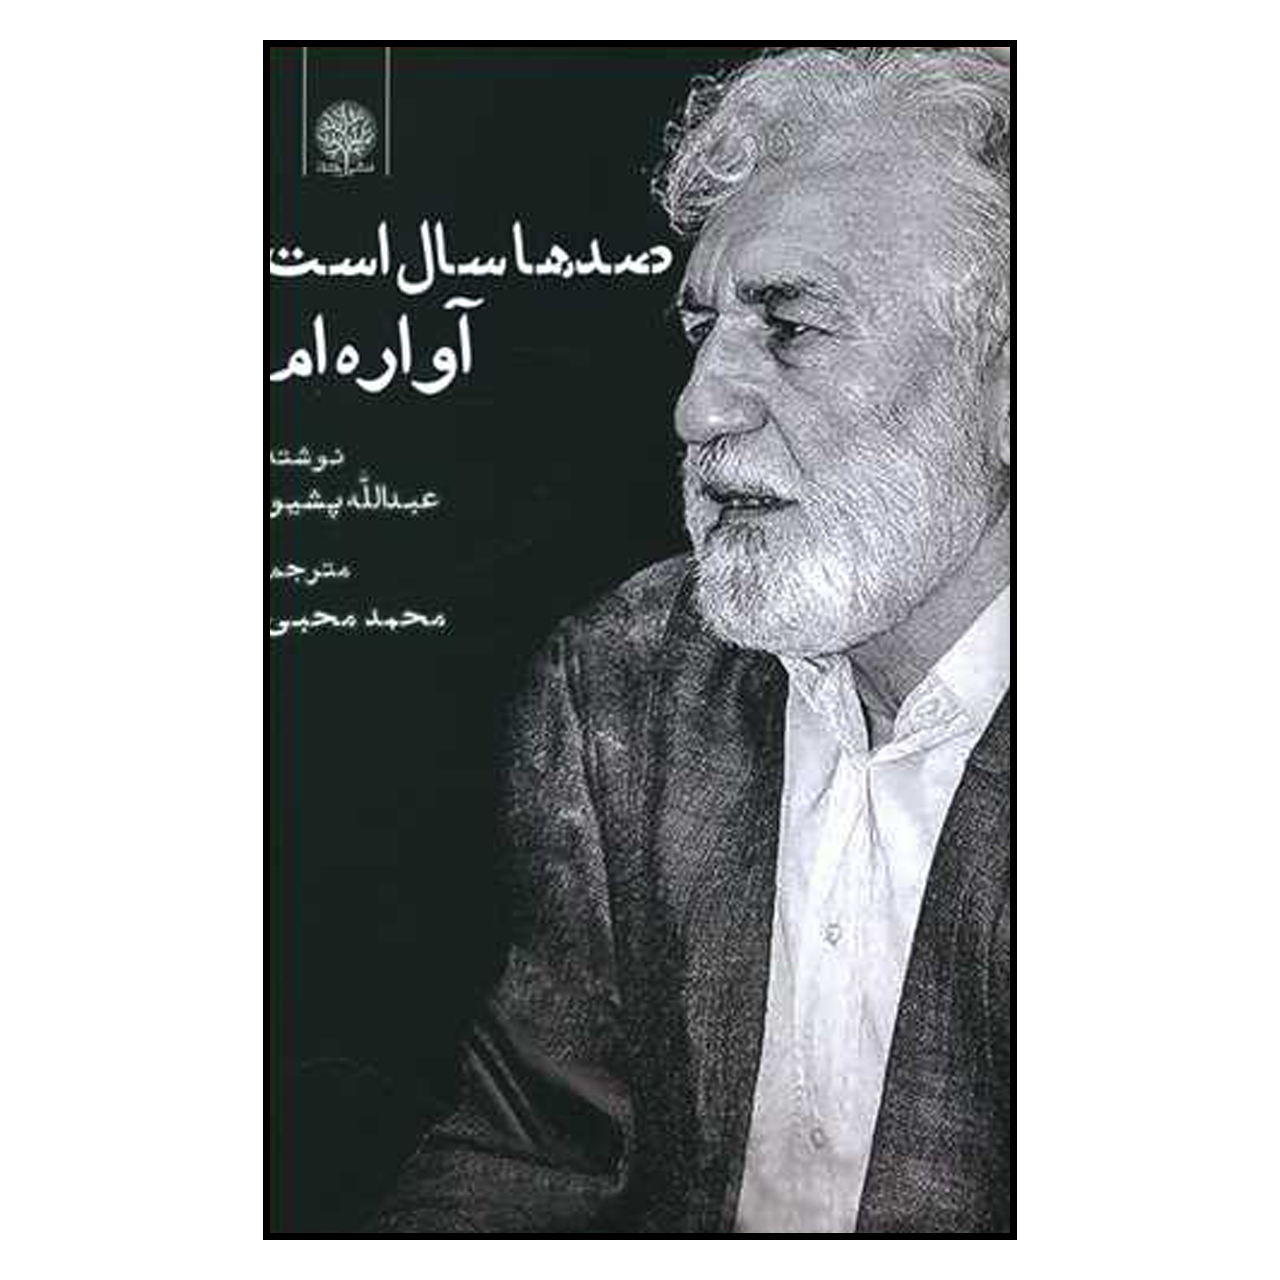 کتاب صدها سال است آواره ام اثر عبدالله پشیمو انتشارات ایجاز